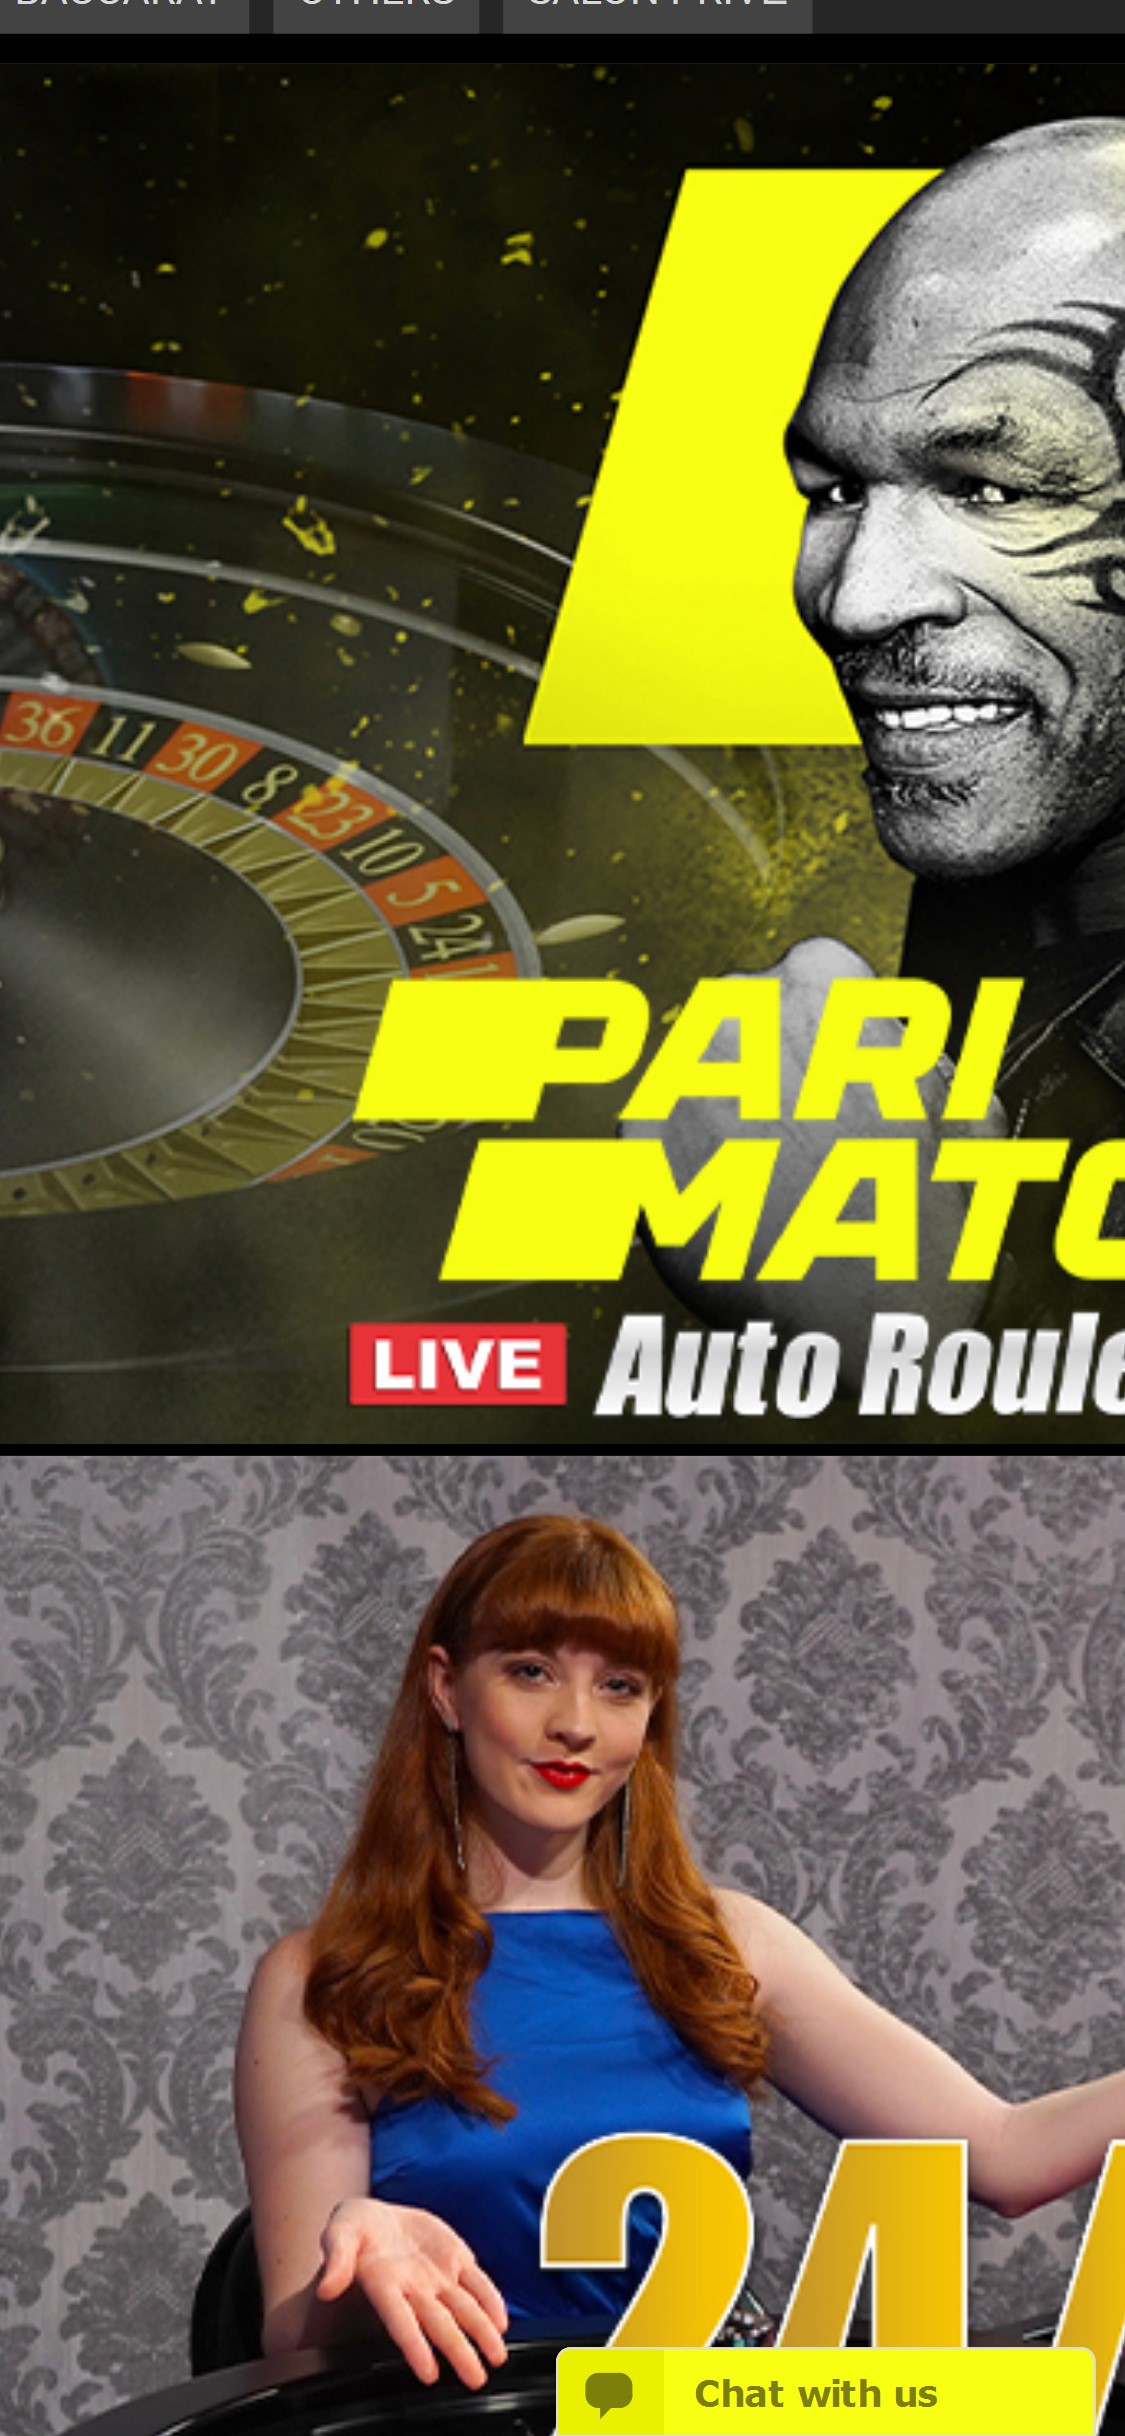 Parimatch Mobile Live Dealer Games Review